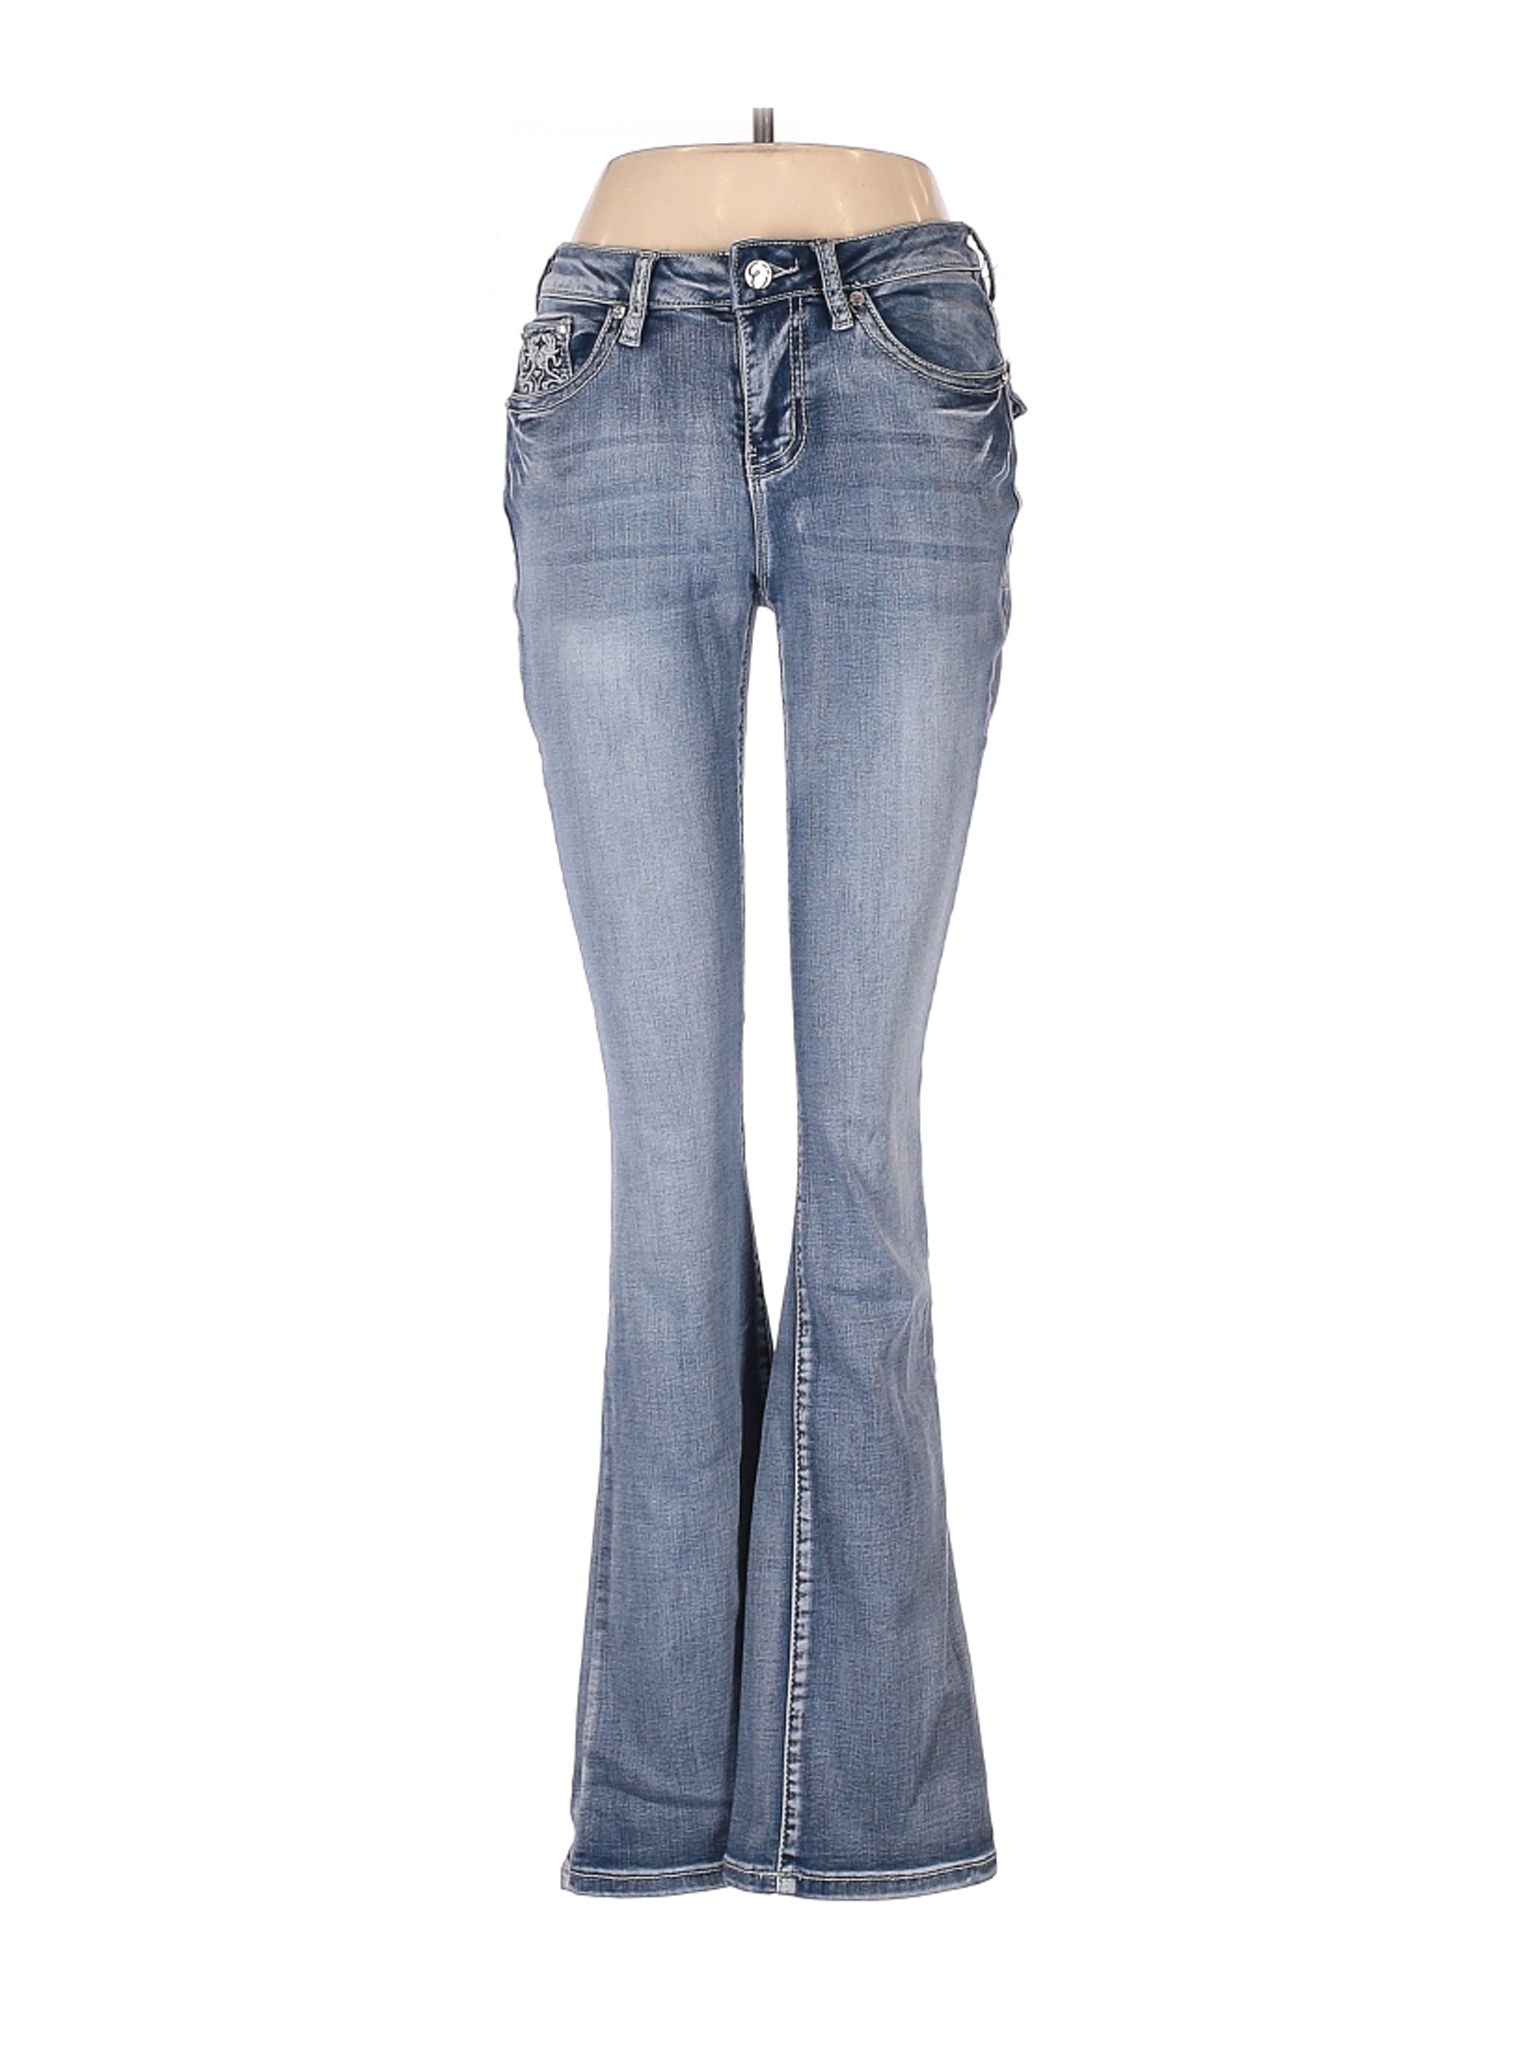 Earl Jean Women Blue Jeans 6 | eBay